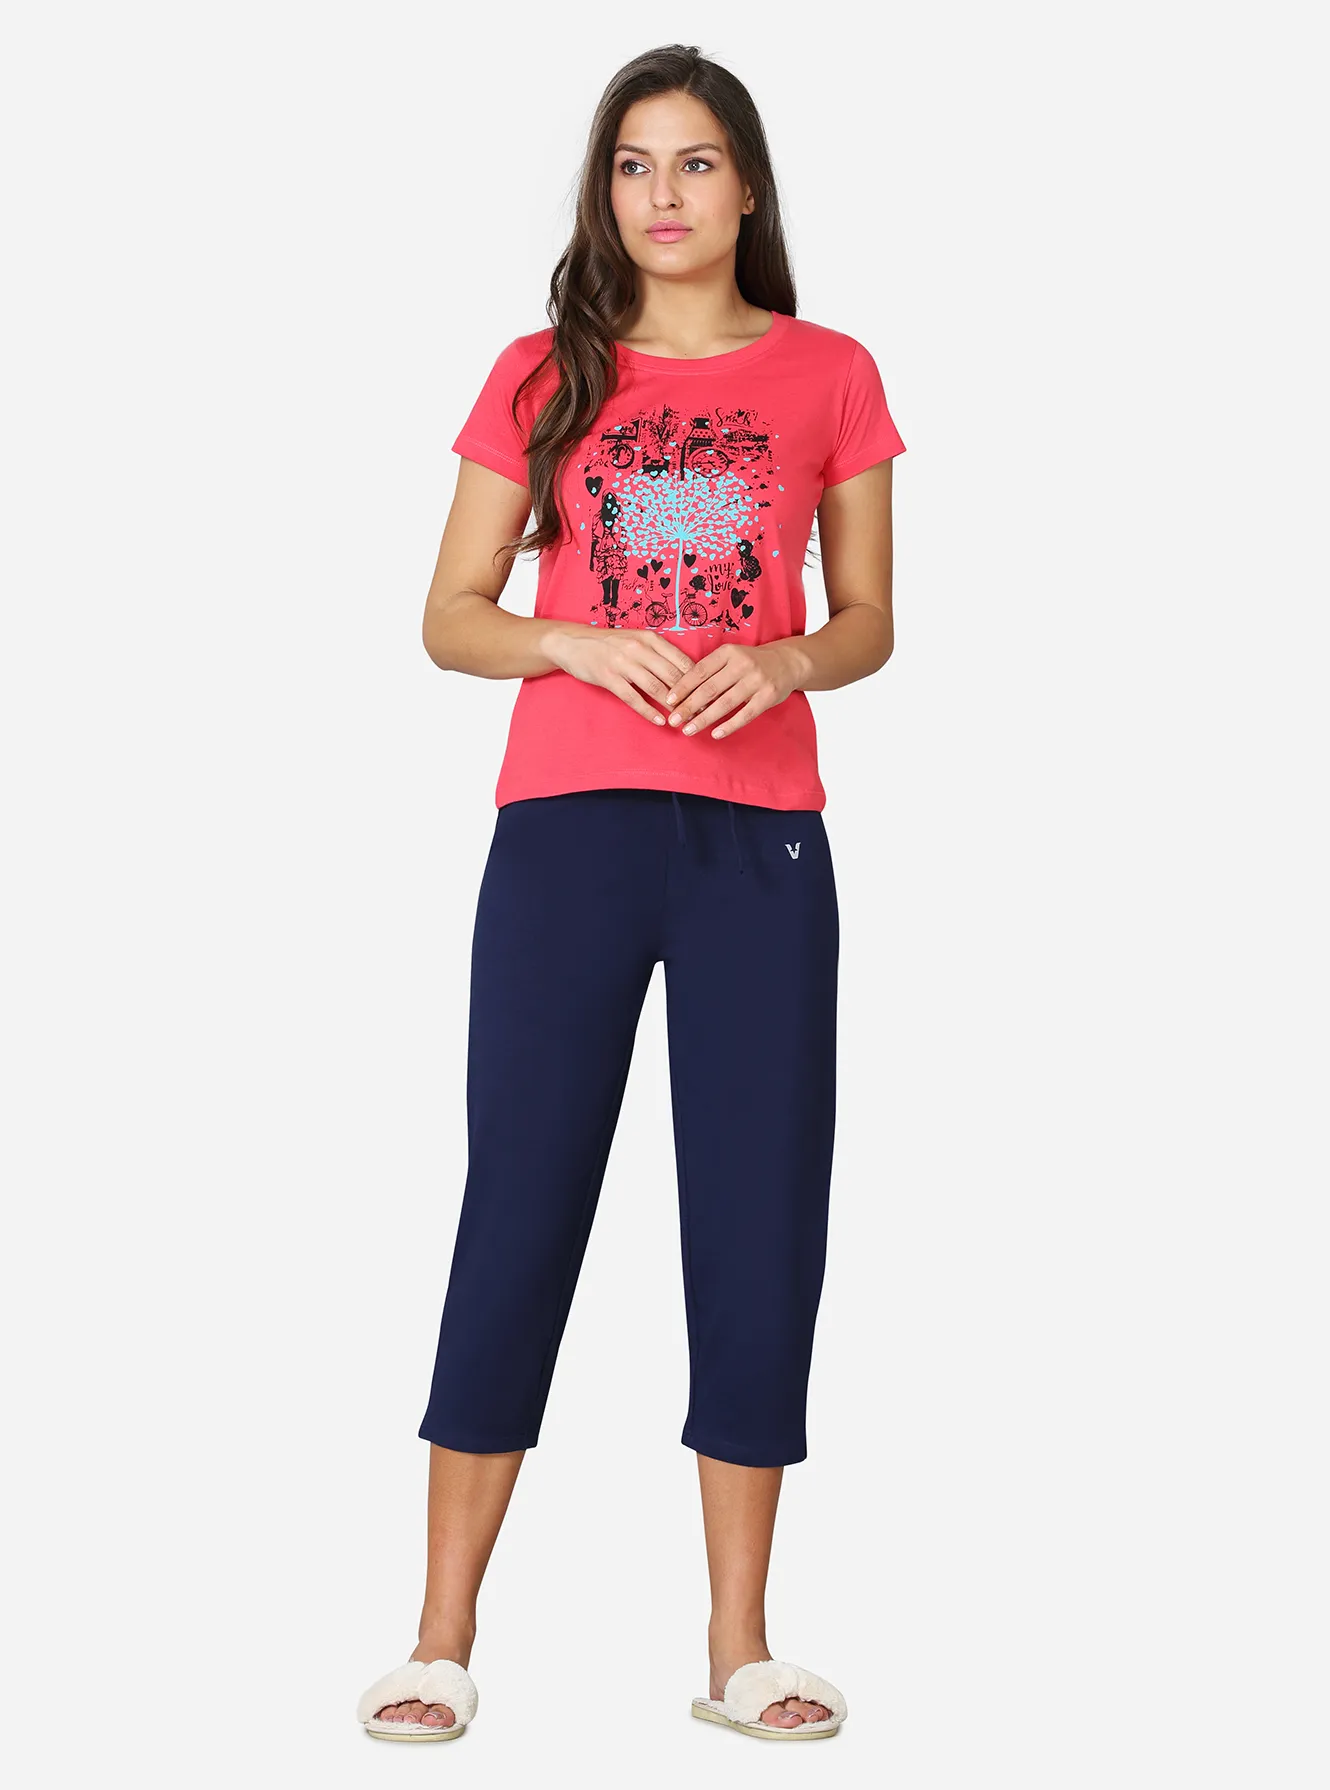 Cotton Capri for Women  34 Length Casual Loungewear Pajama Pant for Women